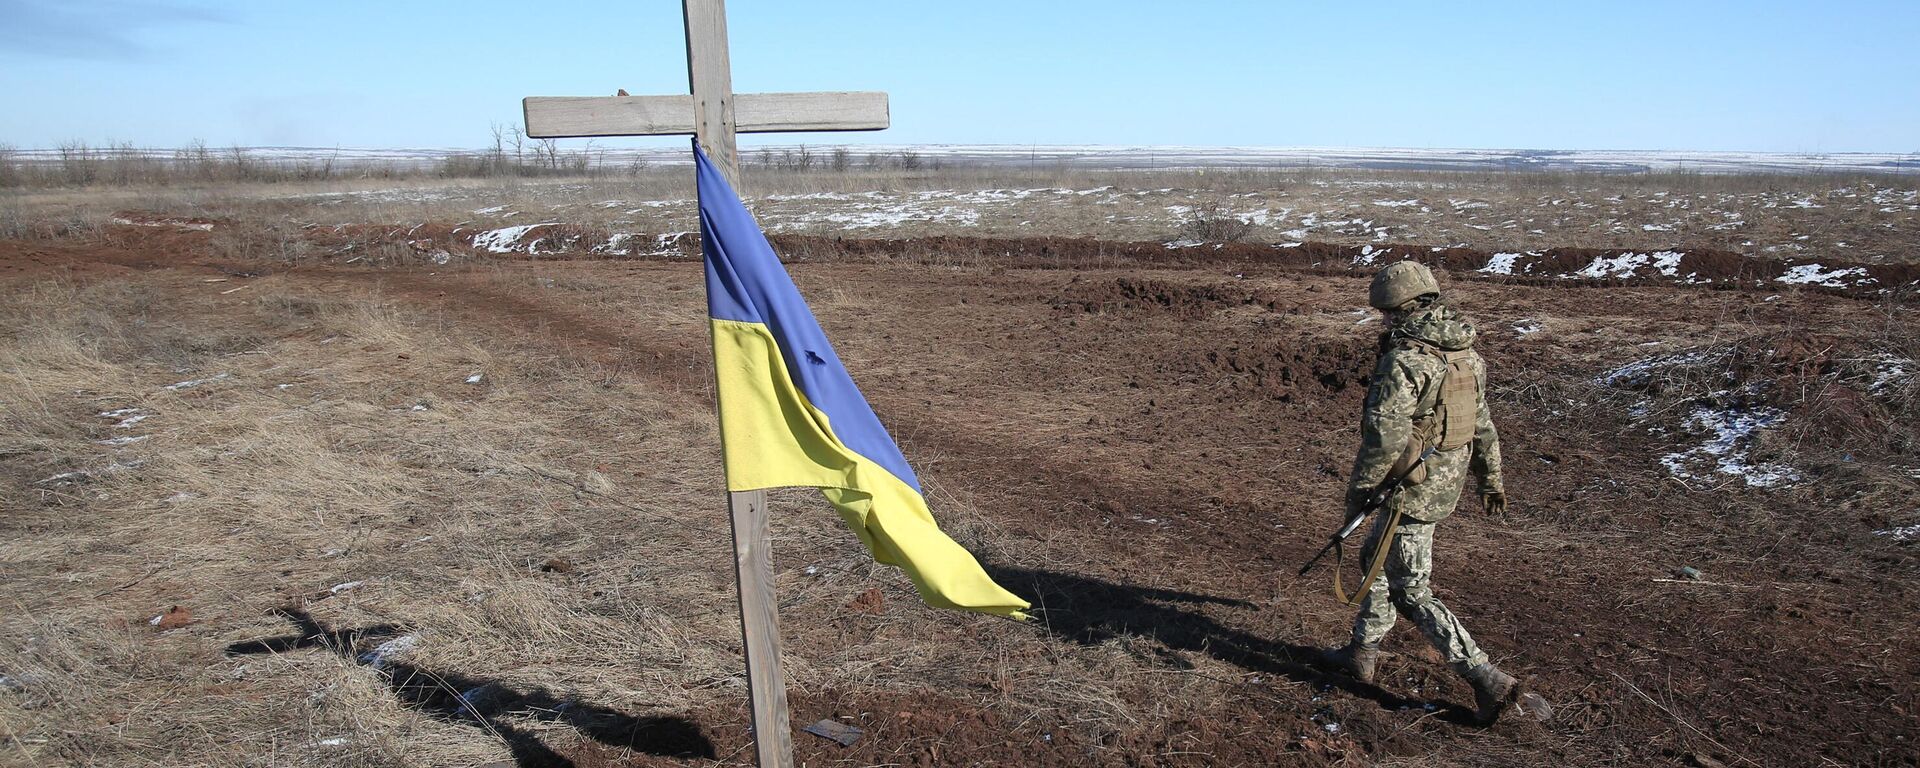 Украинский солдат в городе Светлодарск под Донецком, 12 марта 2022 года  - Sputnik Latvija, 1920, 12.04.2022